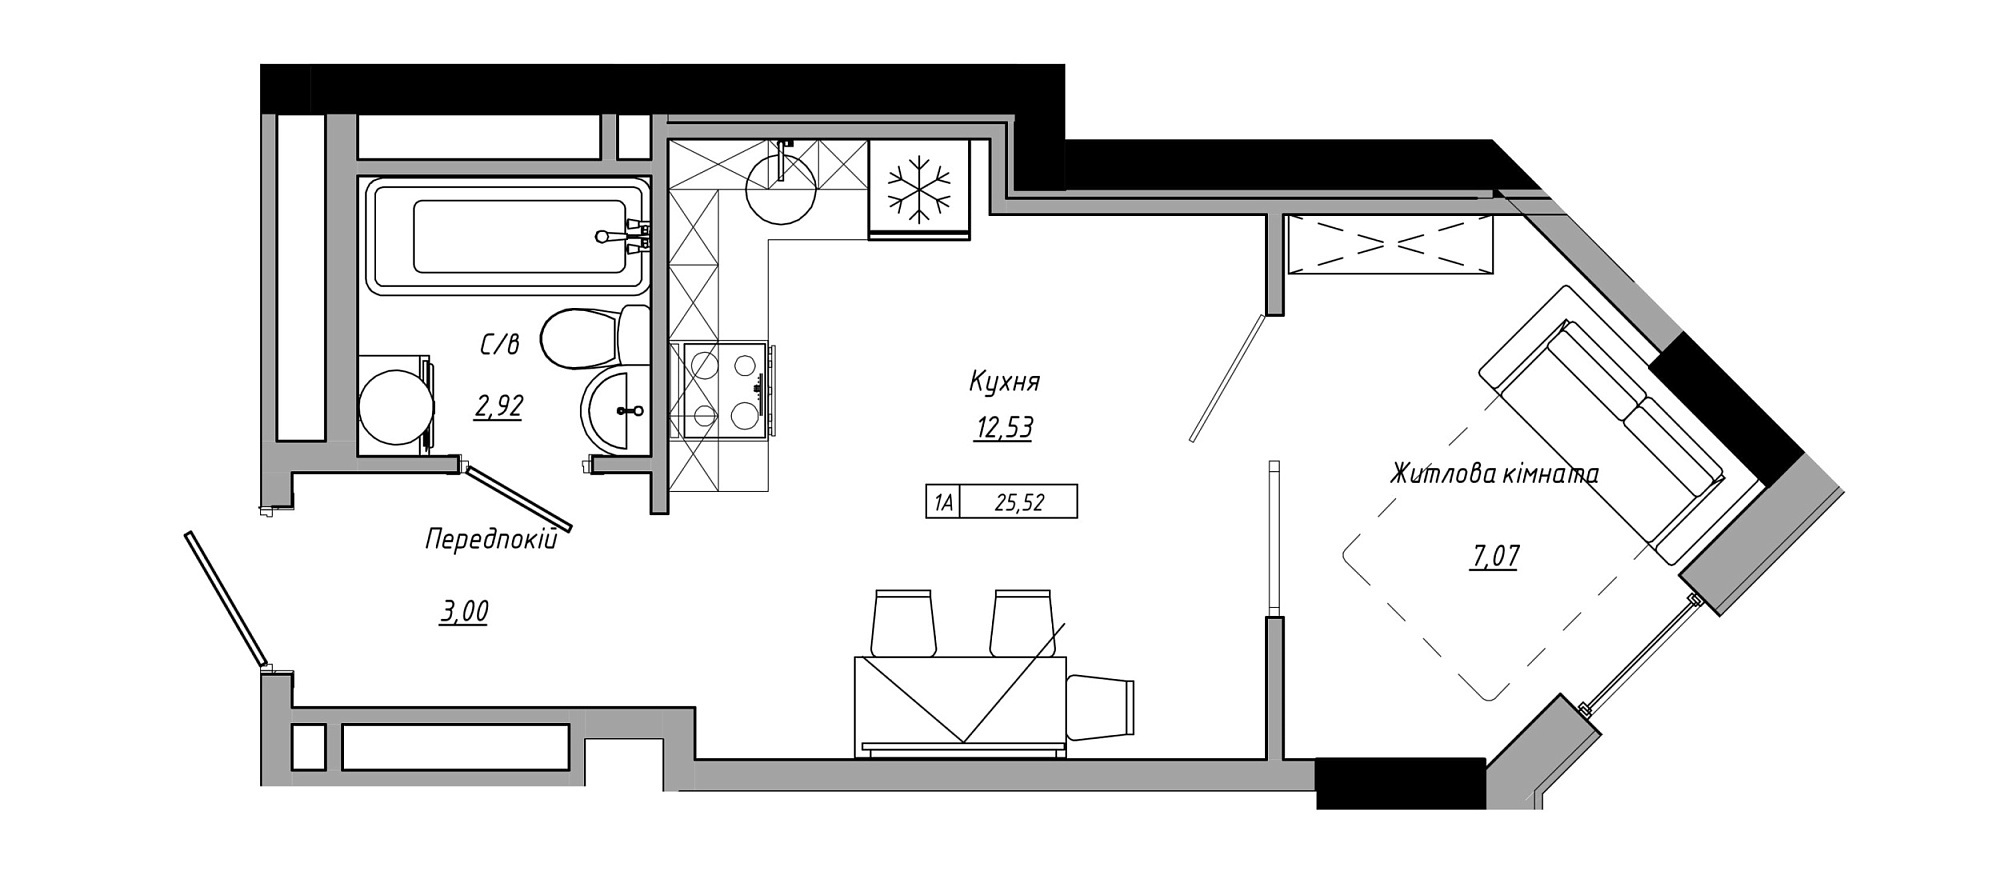 Планировка 1-к квартира площей 25.52м2, AB-21-09/00001.